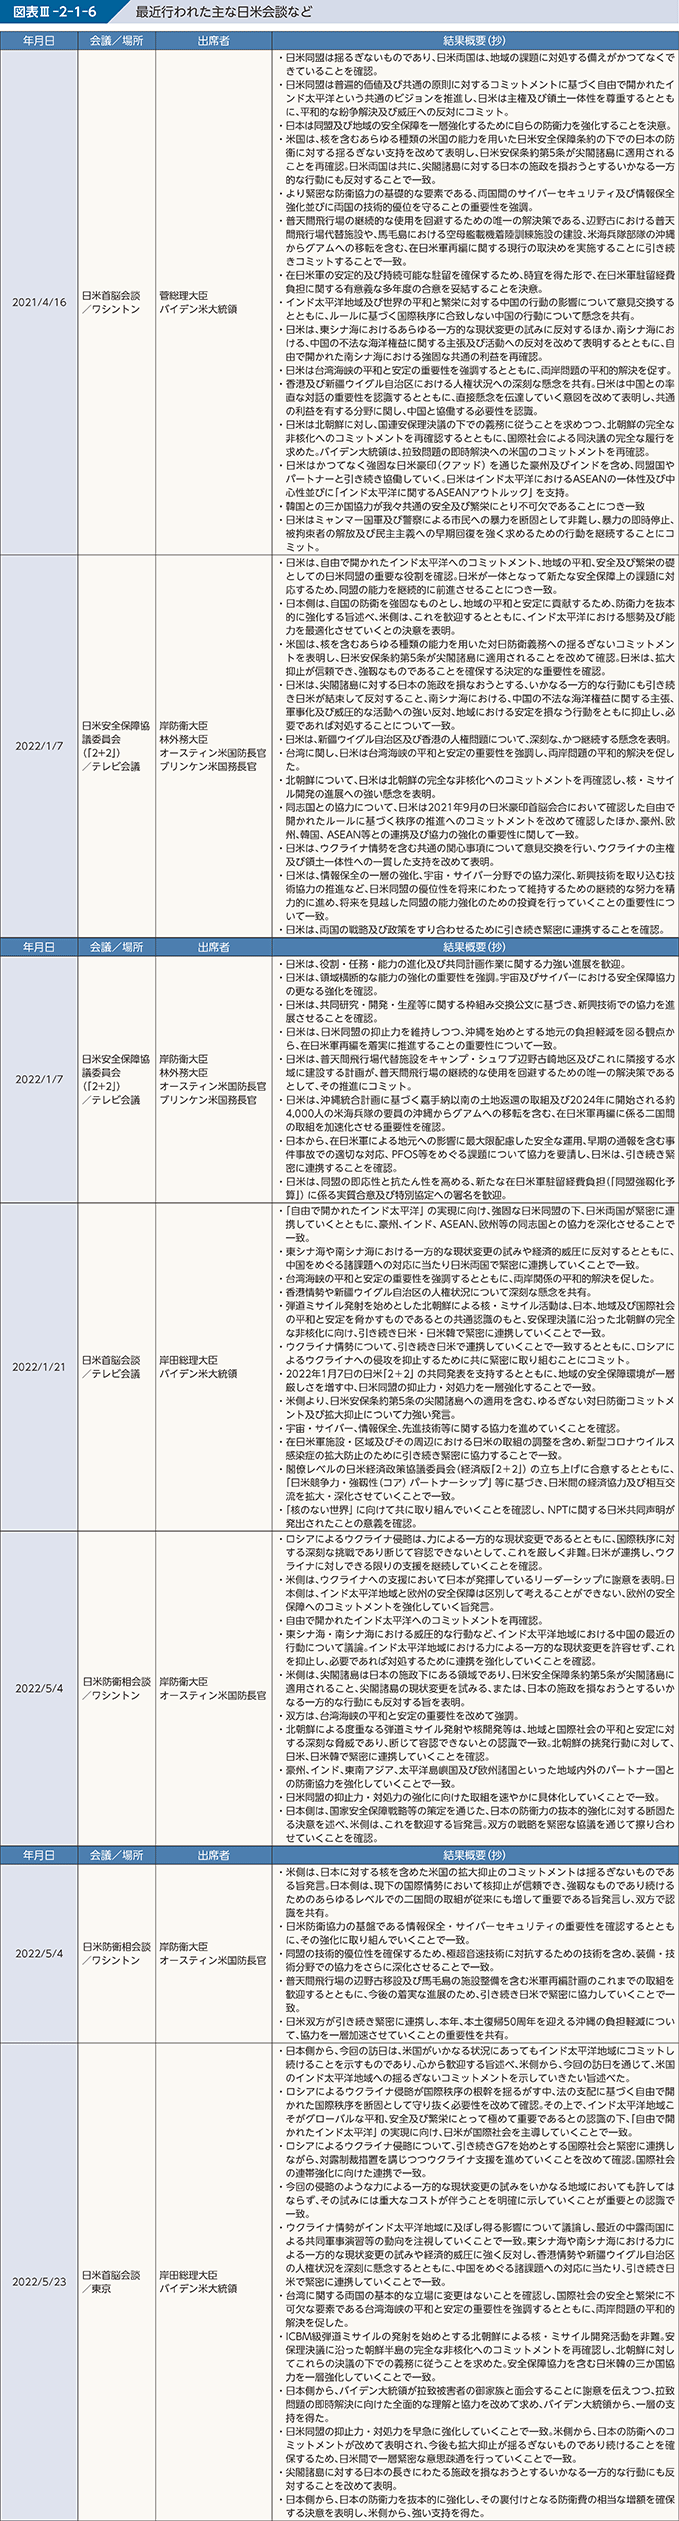 図表III-2-1-6　最近行われた主な日米会談など